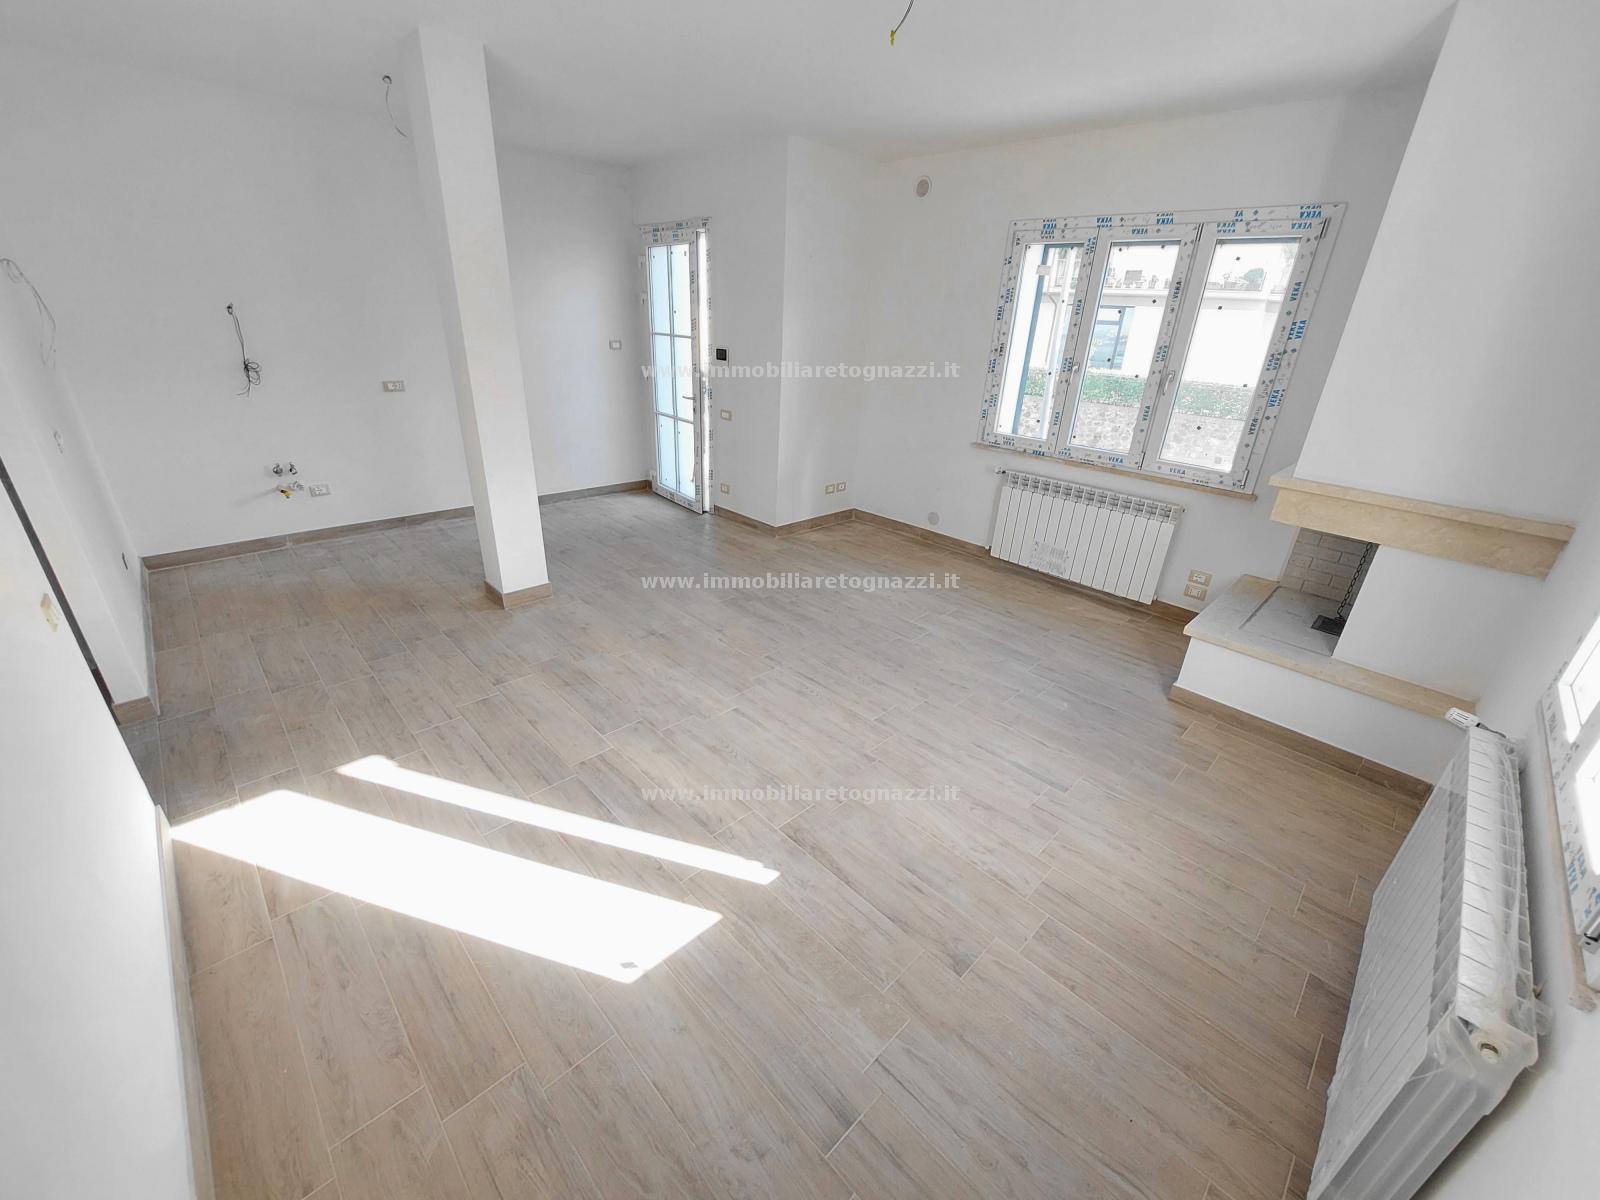 Appartamento in vendita a Gambassi Terme, 3 locali, prezzo € 155.000 | PortaleAgenzieImmobiliari.it